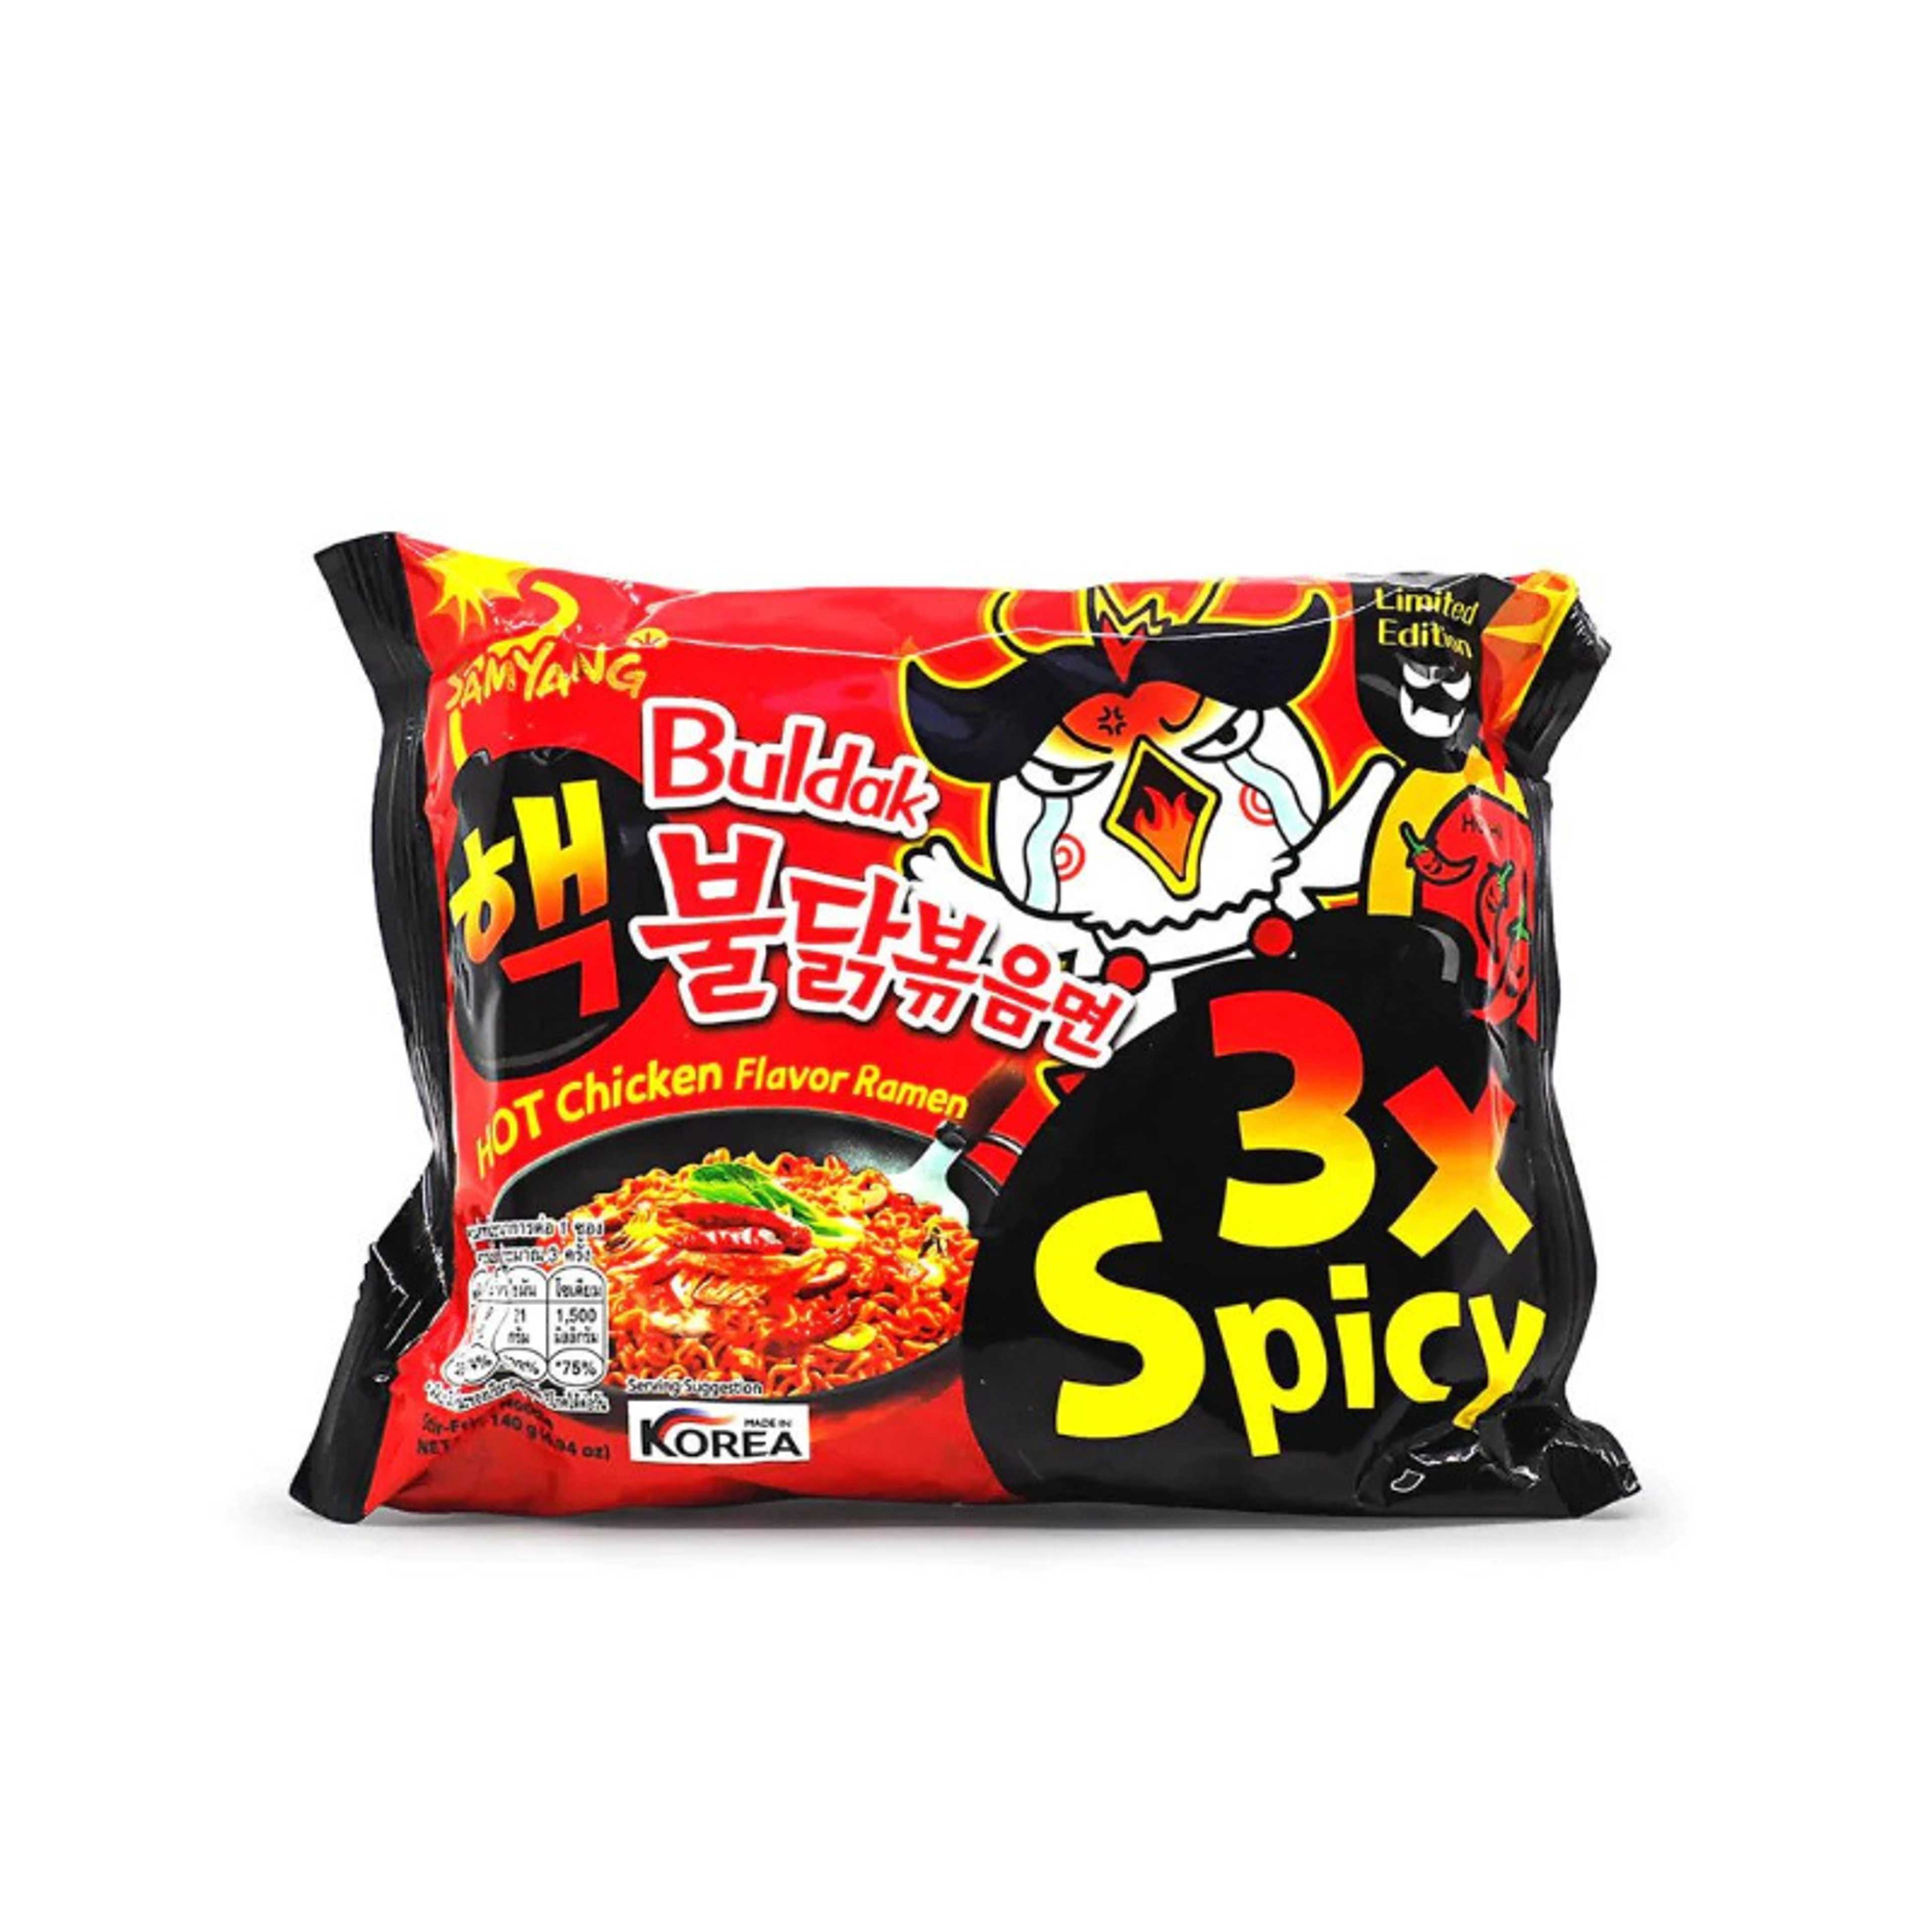 Samyangs Noodles 3X Spicy Hot Chicken Flavor Ramen 140gm